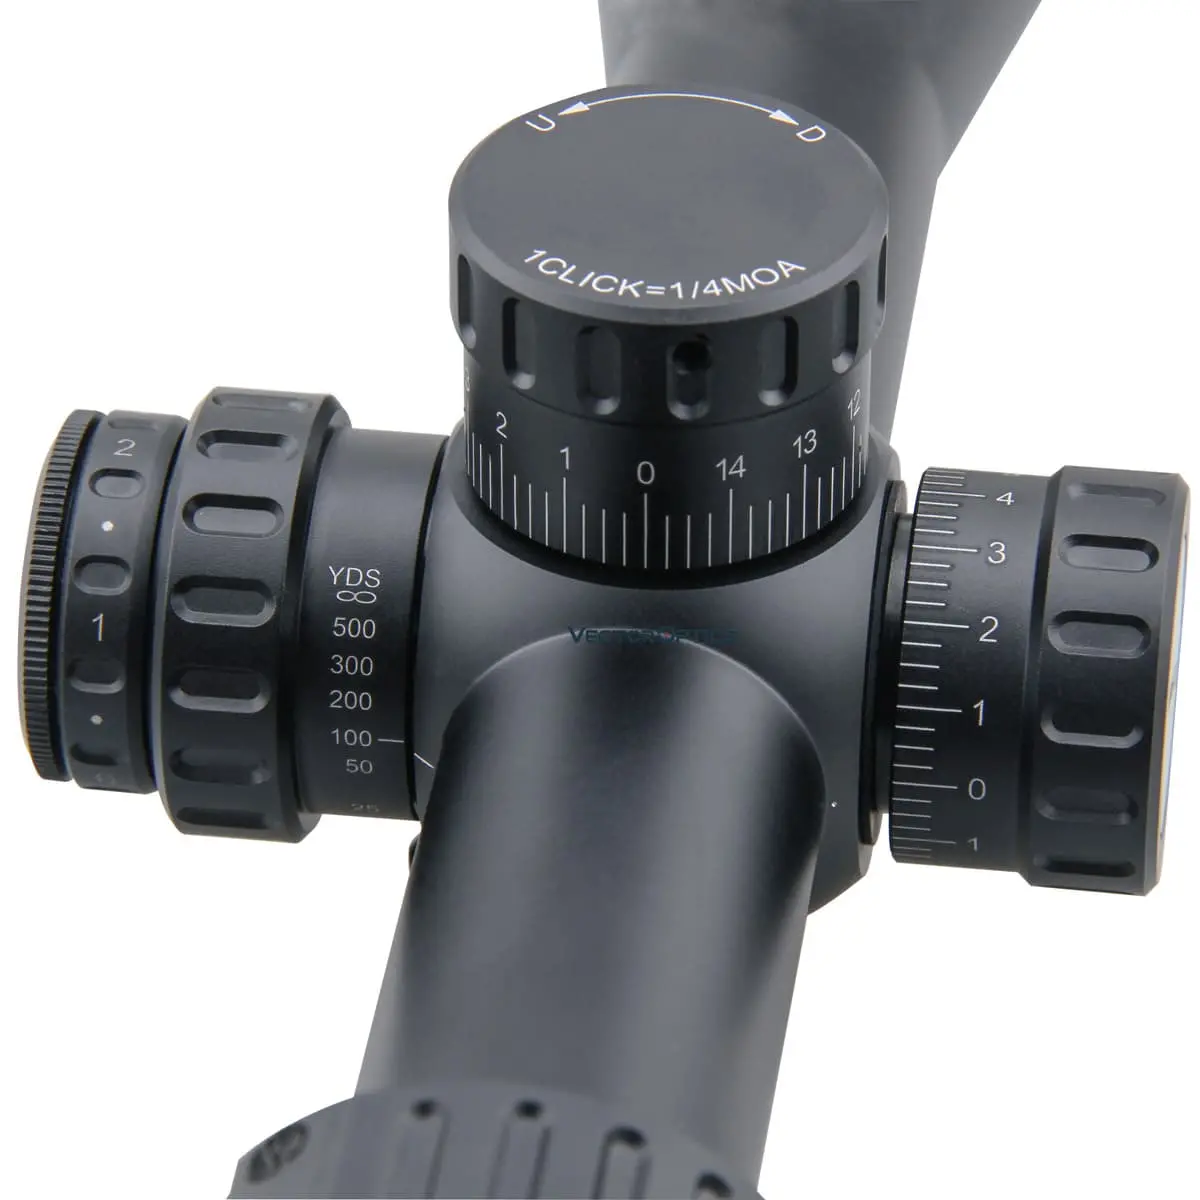  Tourex 4-16x44FFP Riflescope